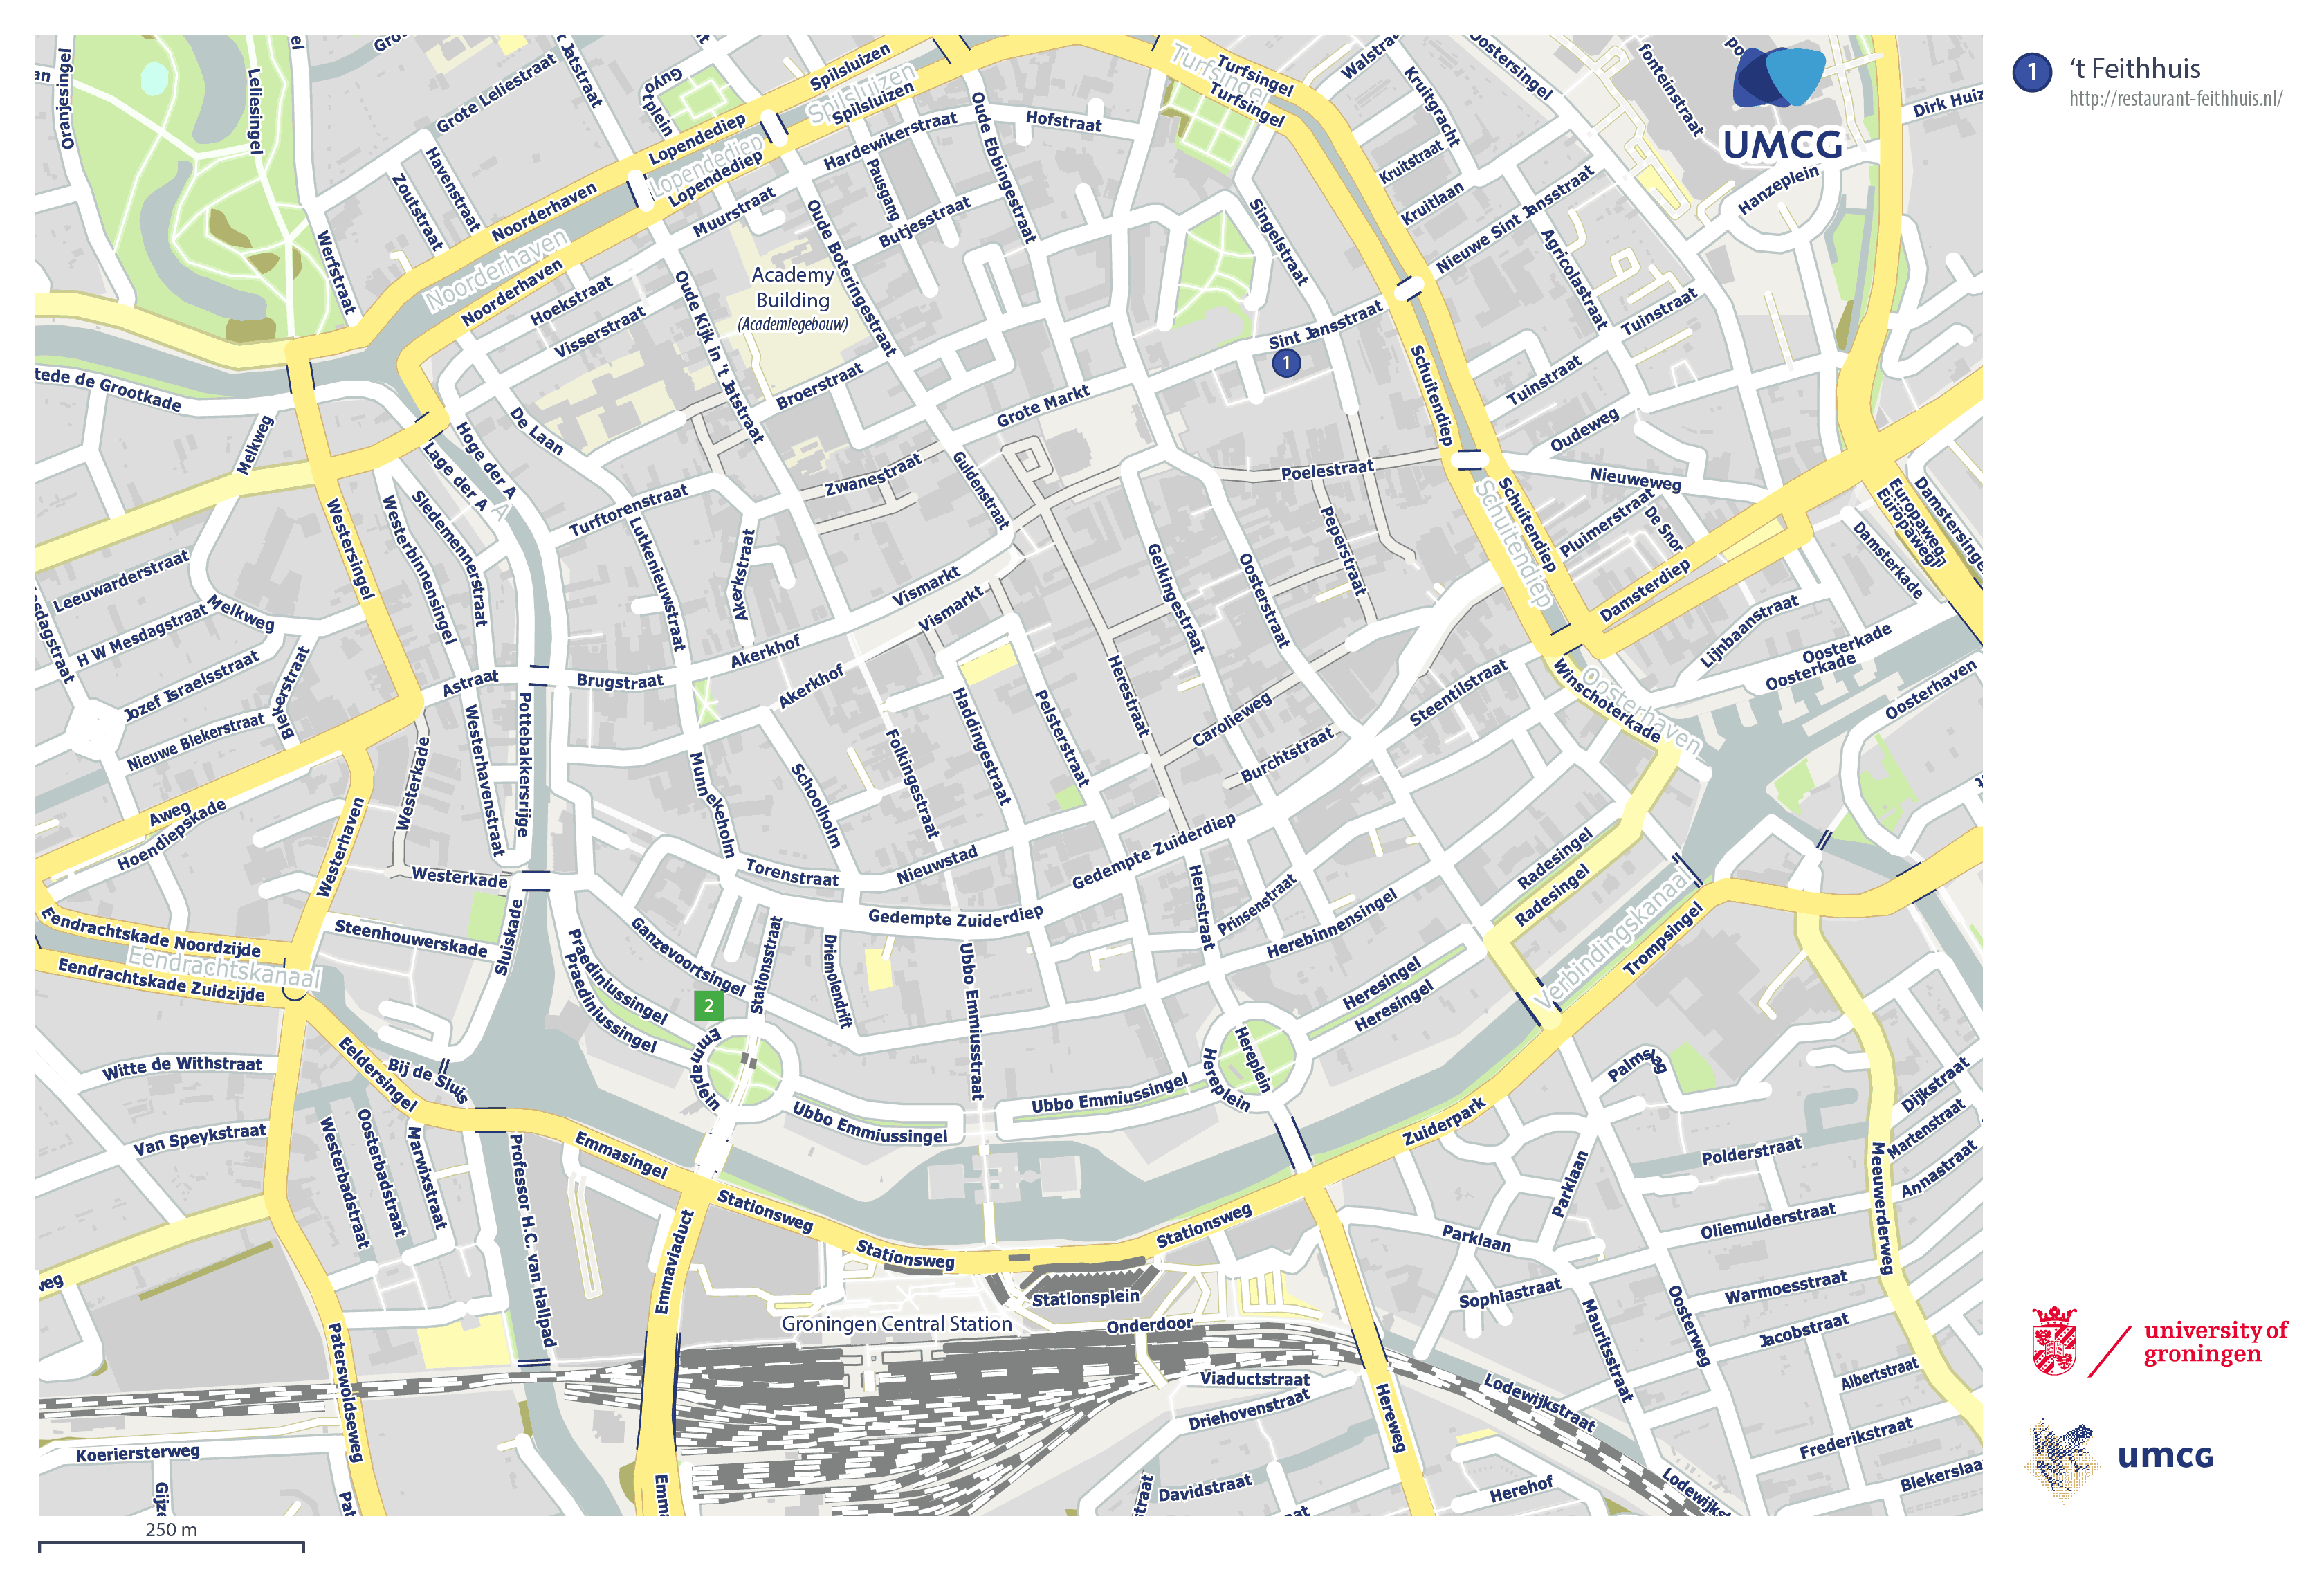 Map of Groningen